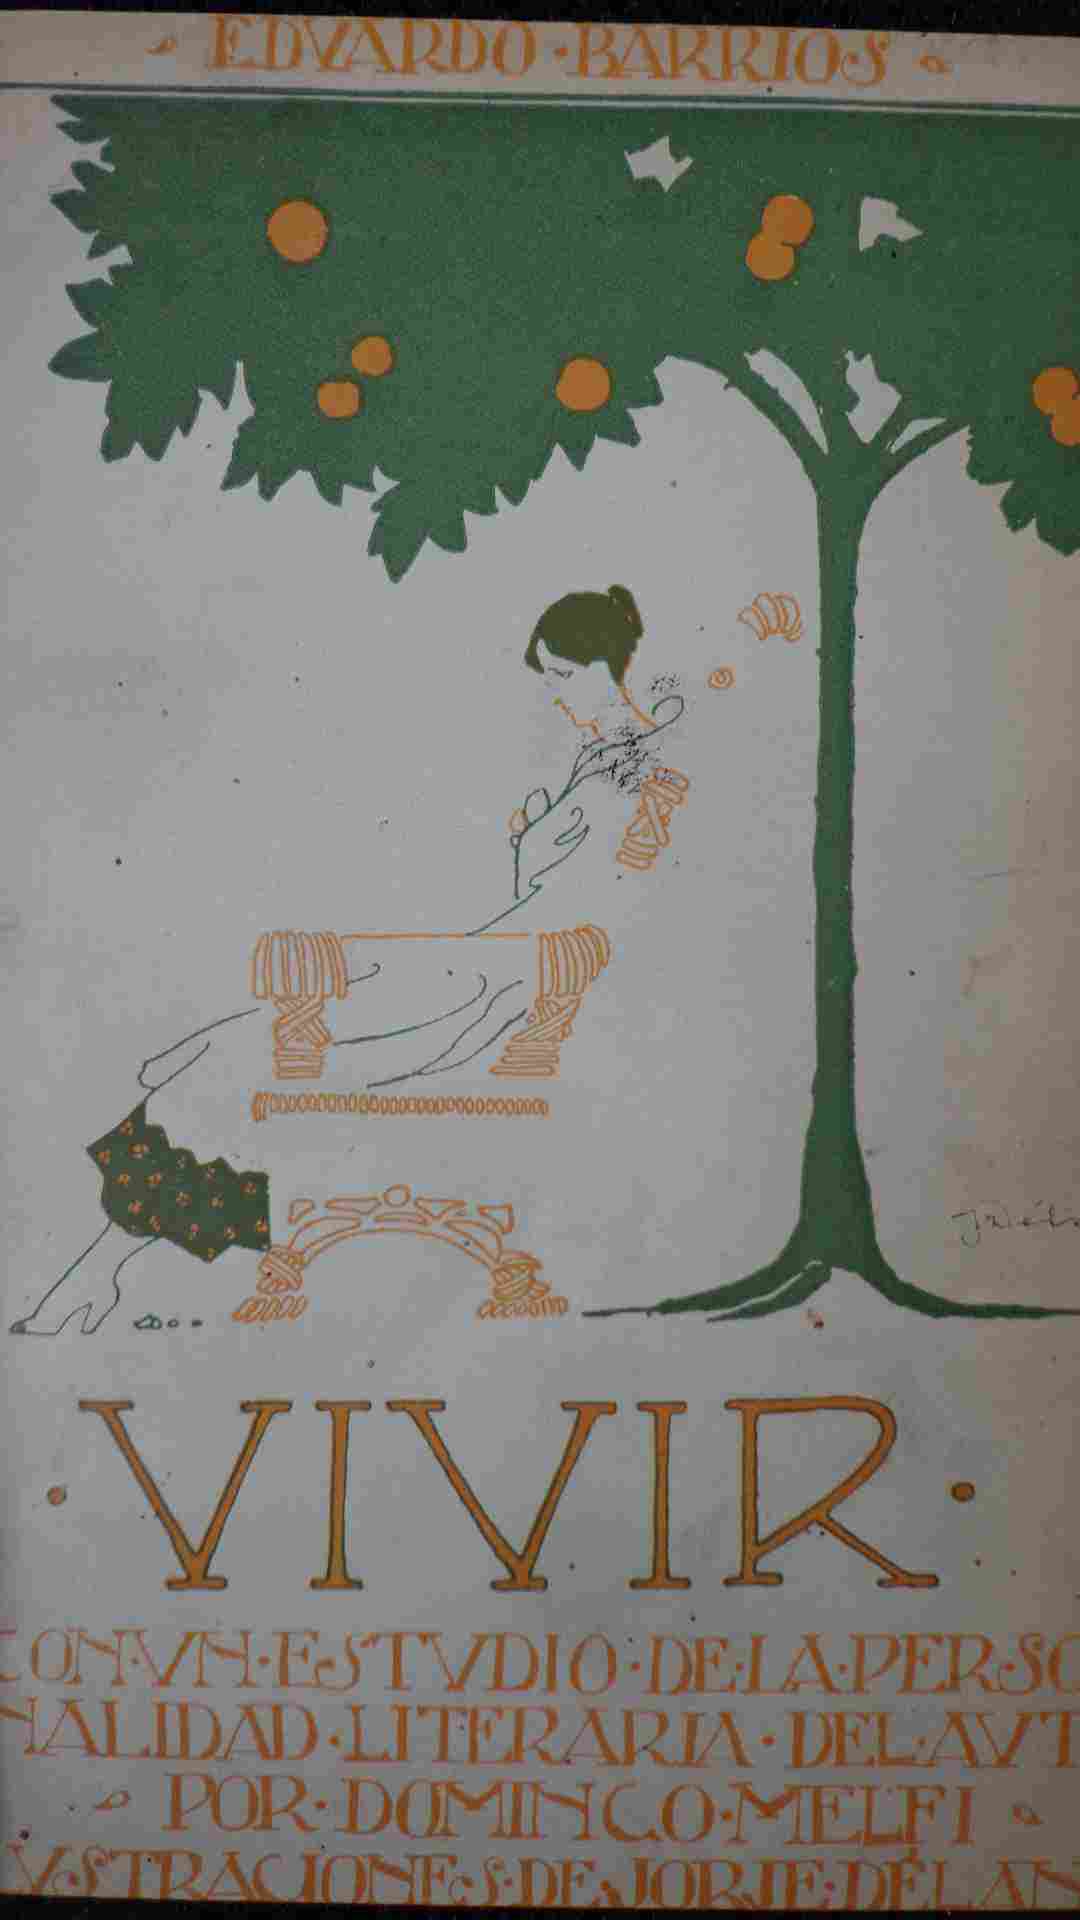 Vivir : drama en tres actos y en prosa / Eduardo Barrios ;prólogo de Domingo Melfi Demarco ; ilustraciones de Jorje Délano.